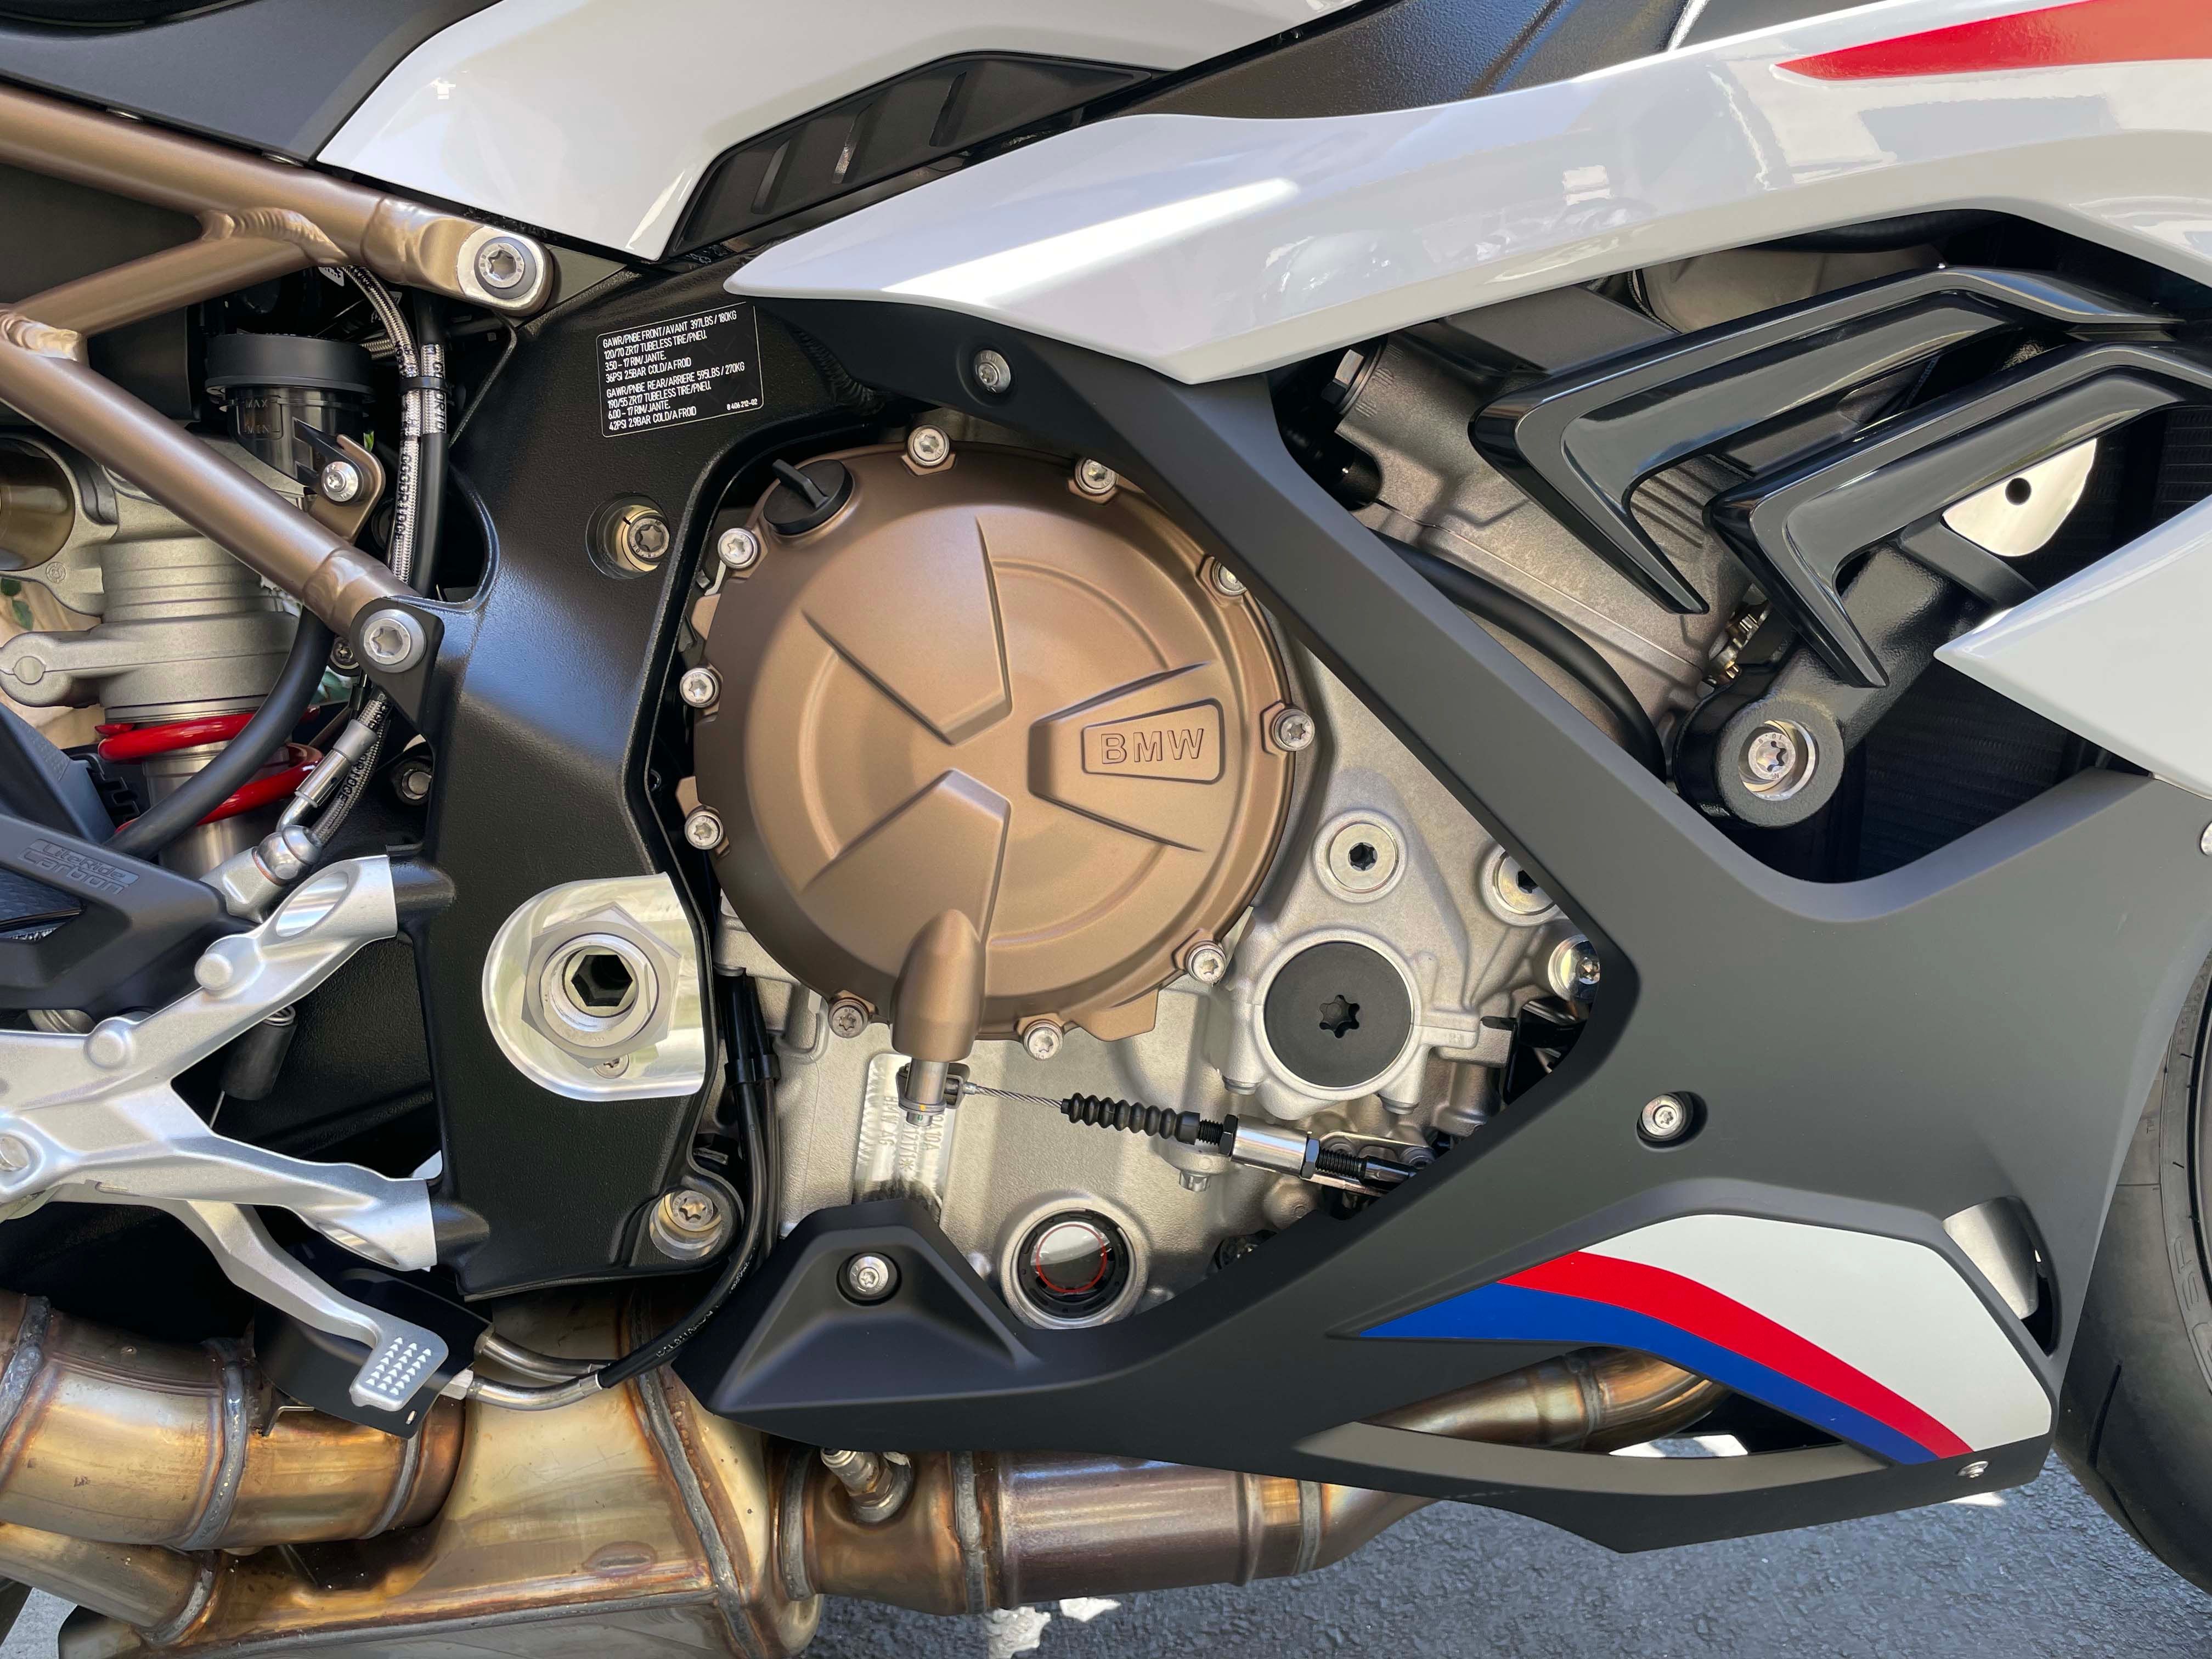 2022 BMW S 1000 RR Engine Closeup